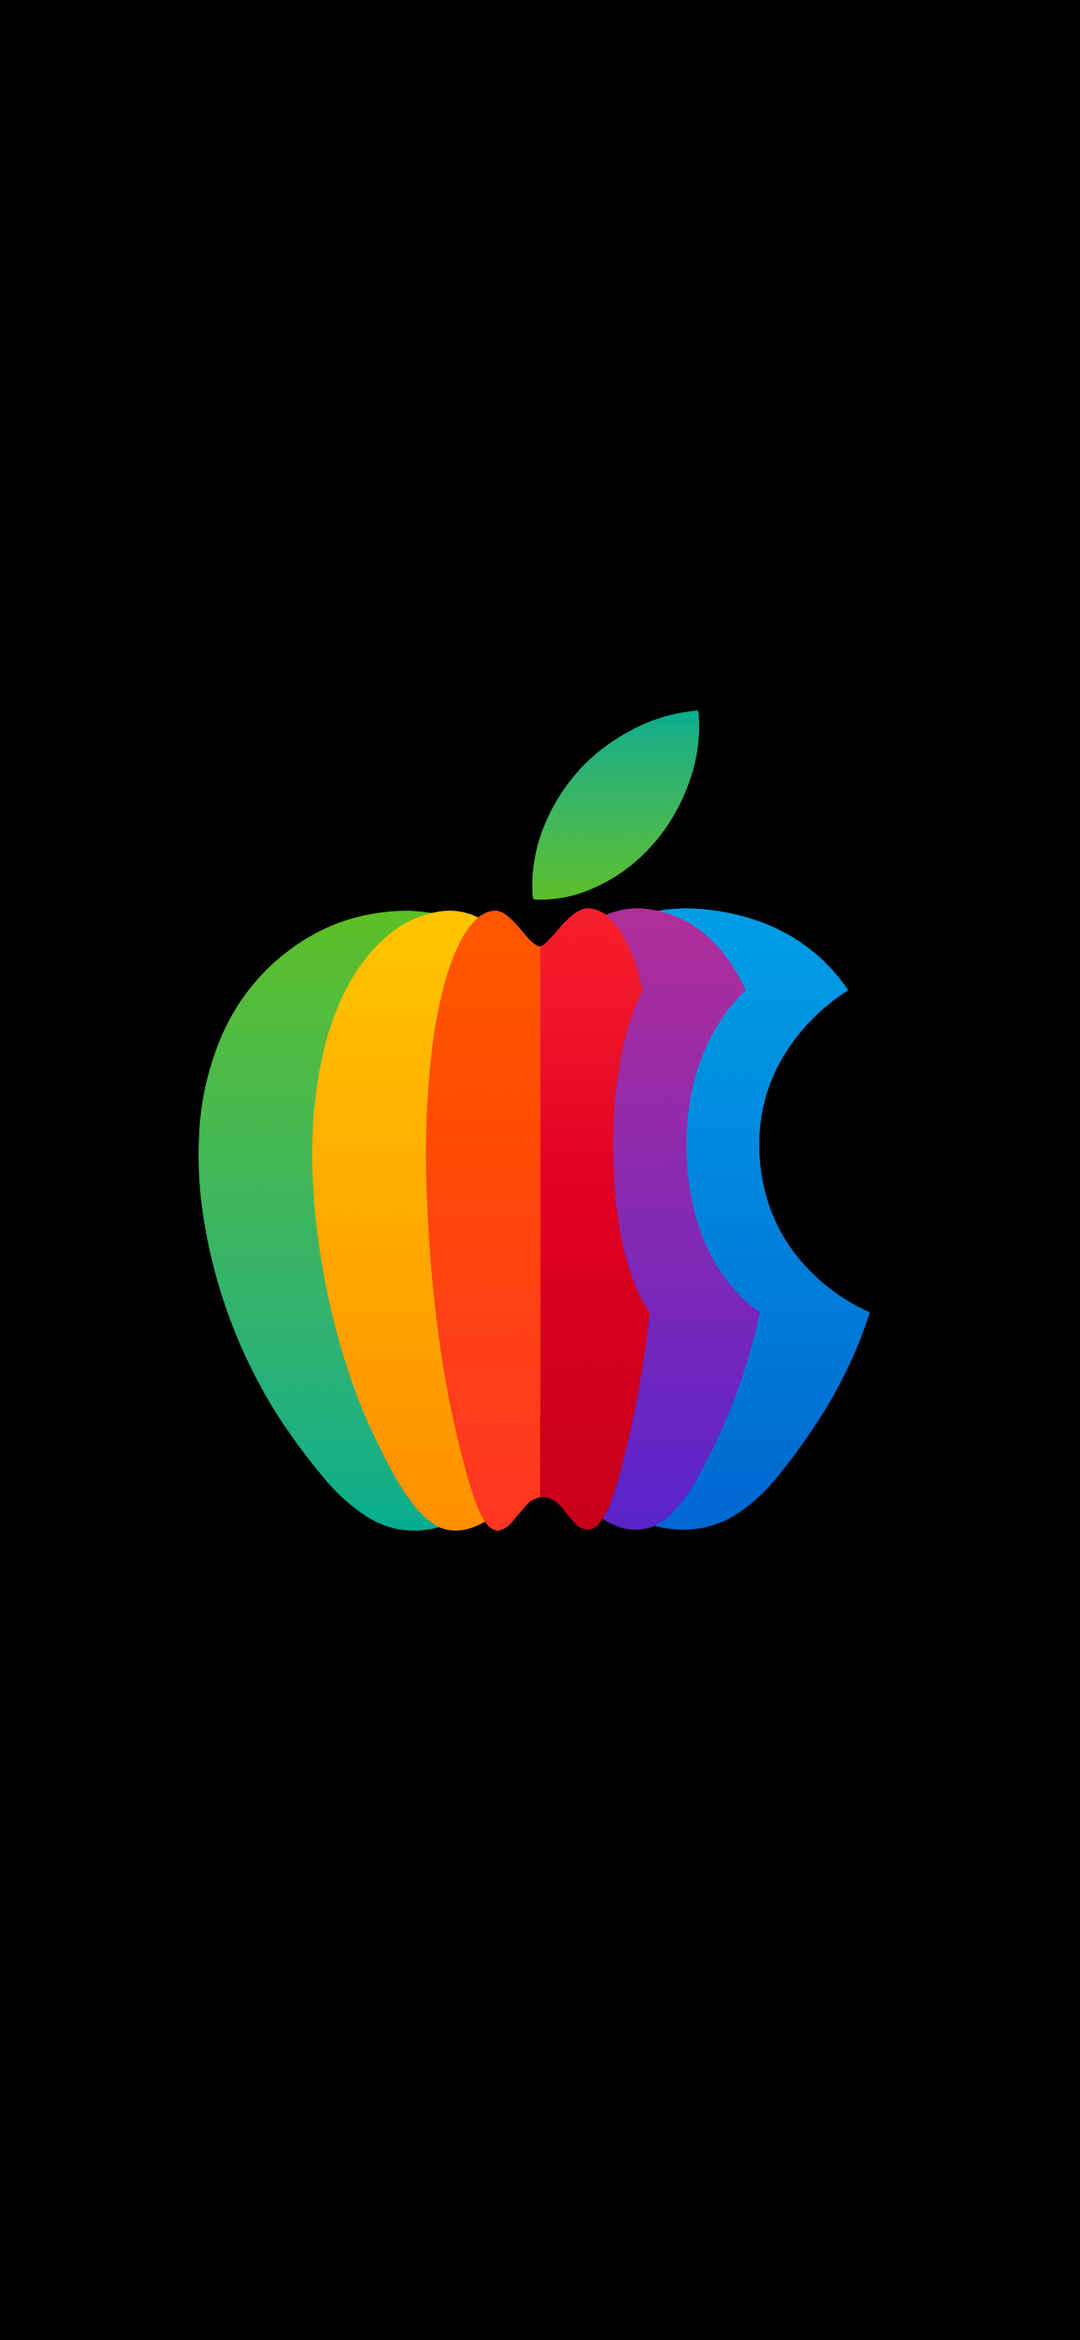 黑色背景Apple彩色Logo手机壁纸